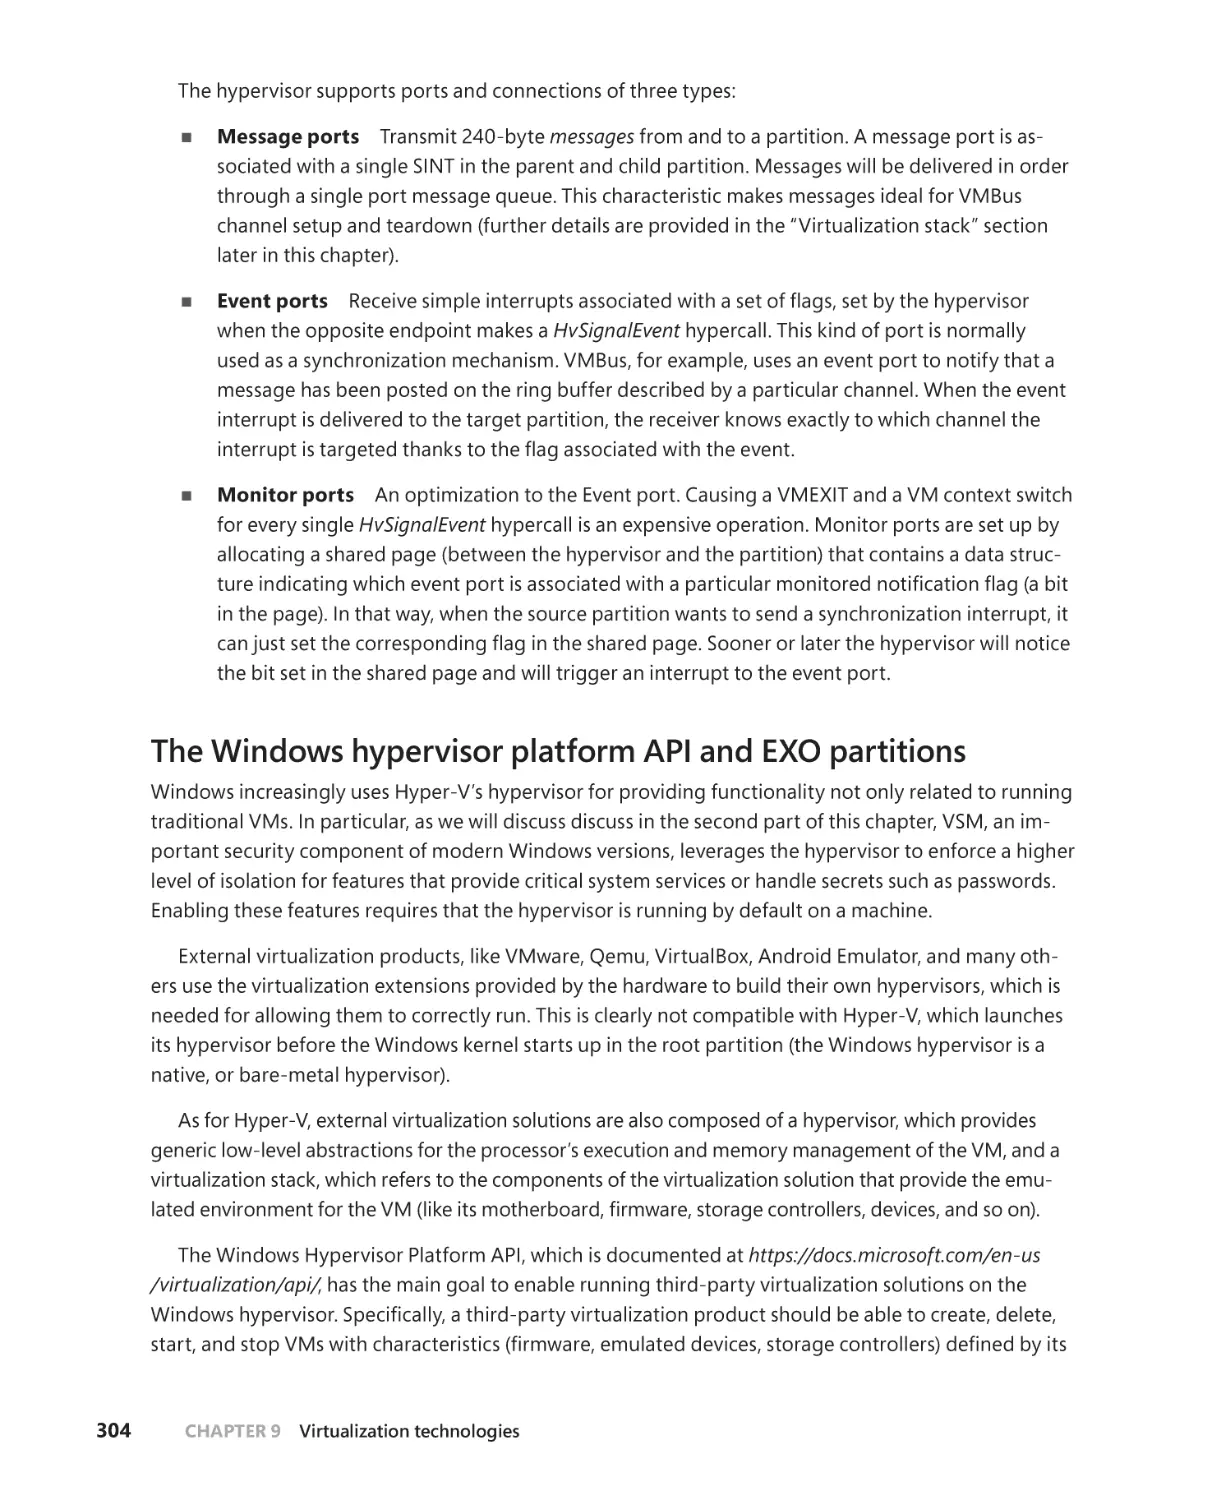 The Windows hypervisor platform API and EXO partitions